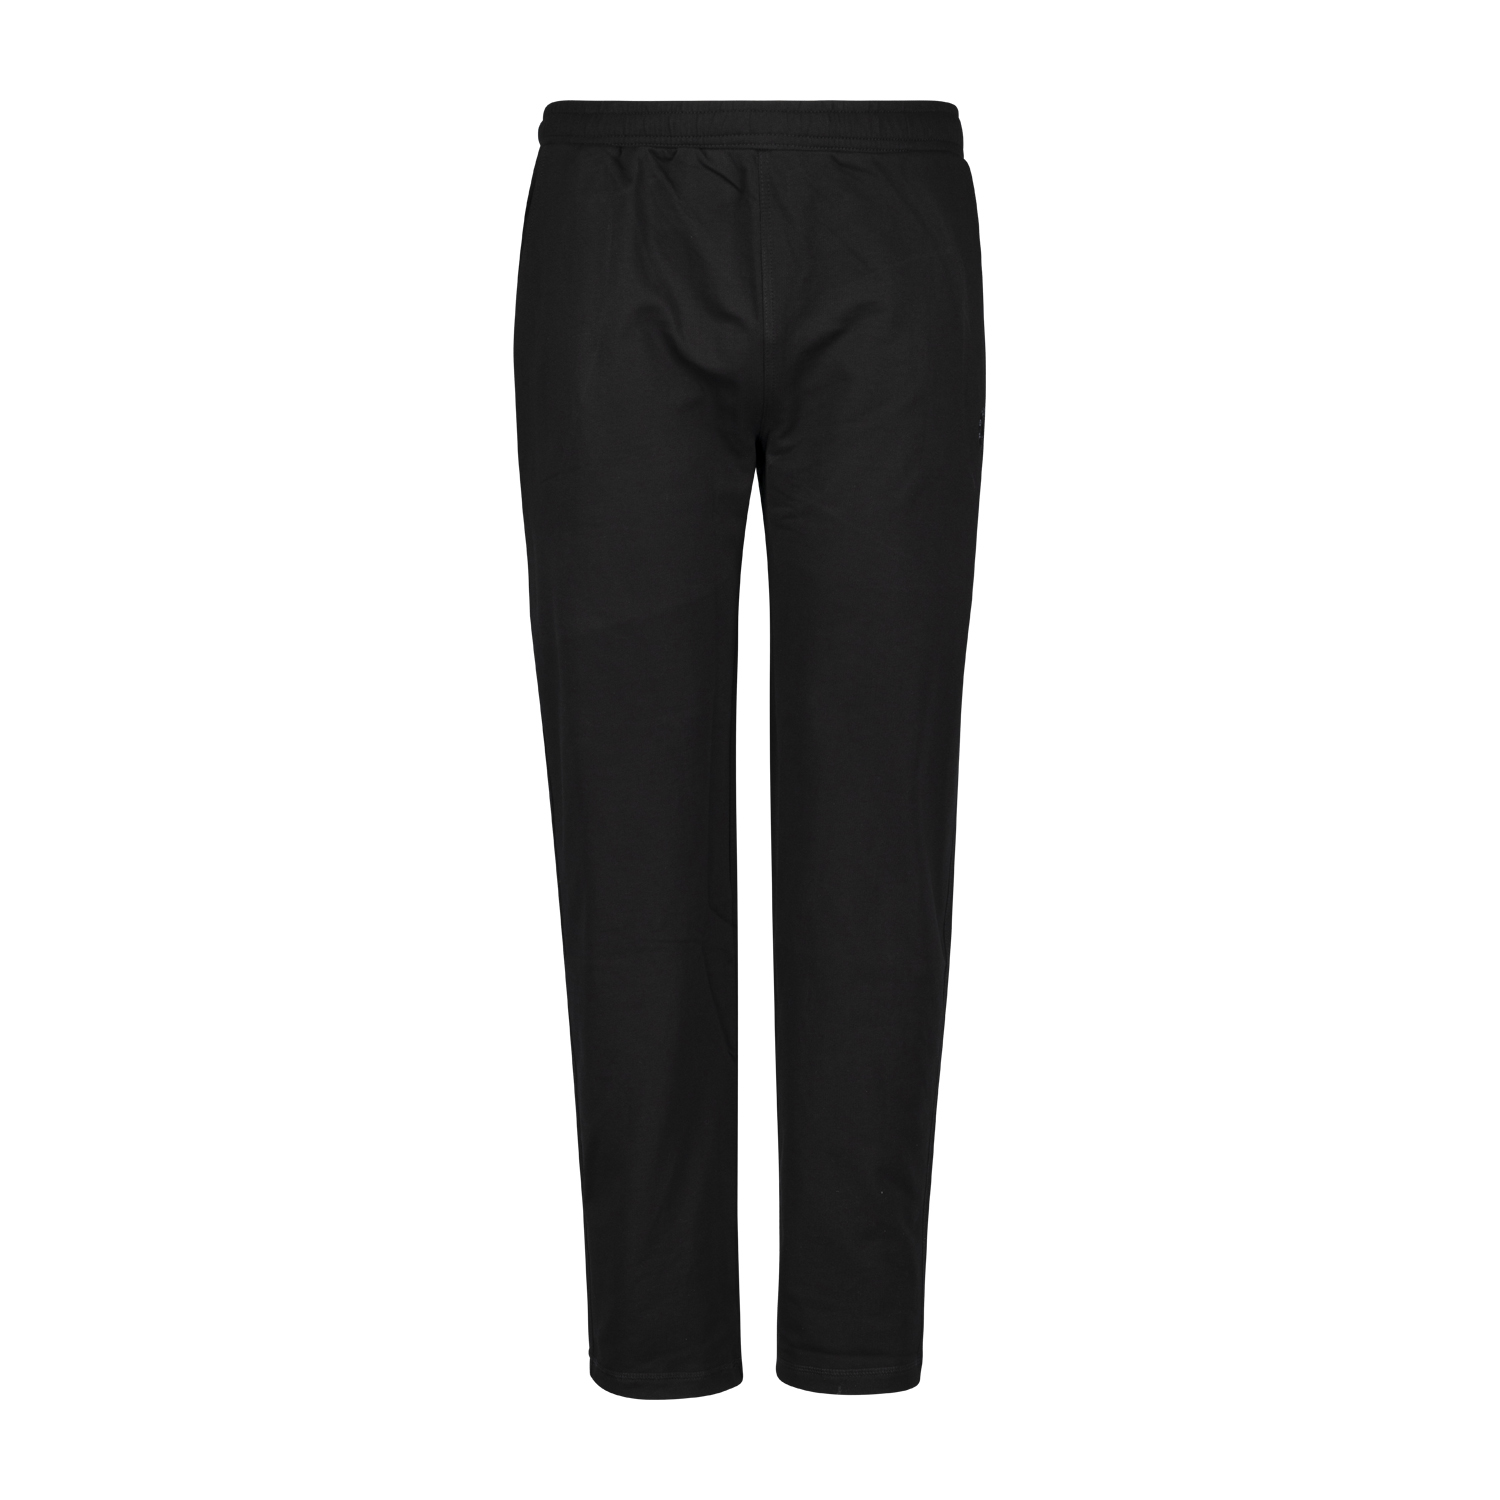 Pantalon de jogging noir by Ahorn Sportswear en grandes tailles jusqu'au 10XL